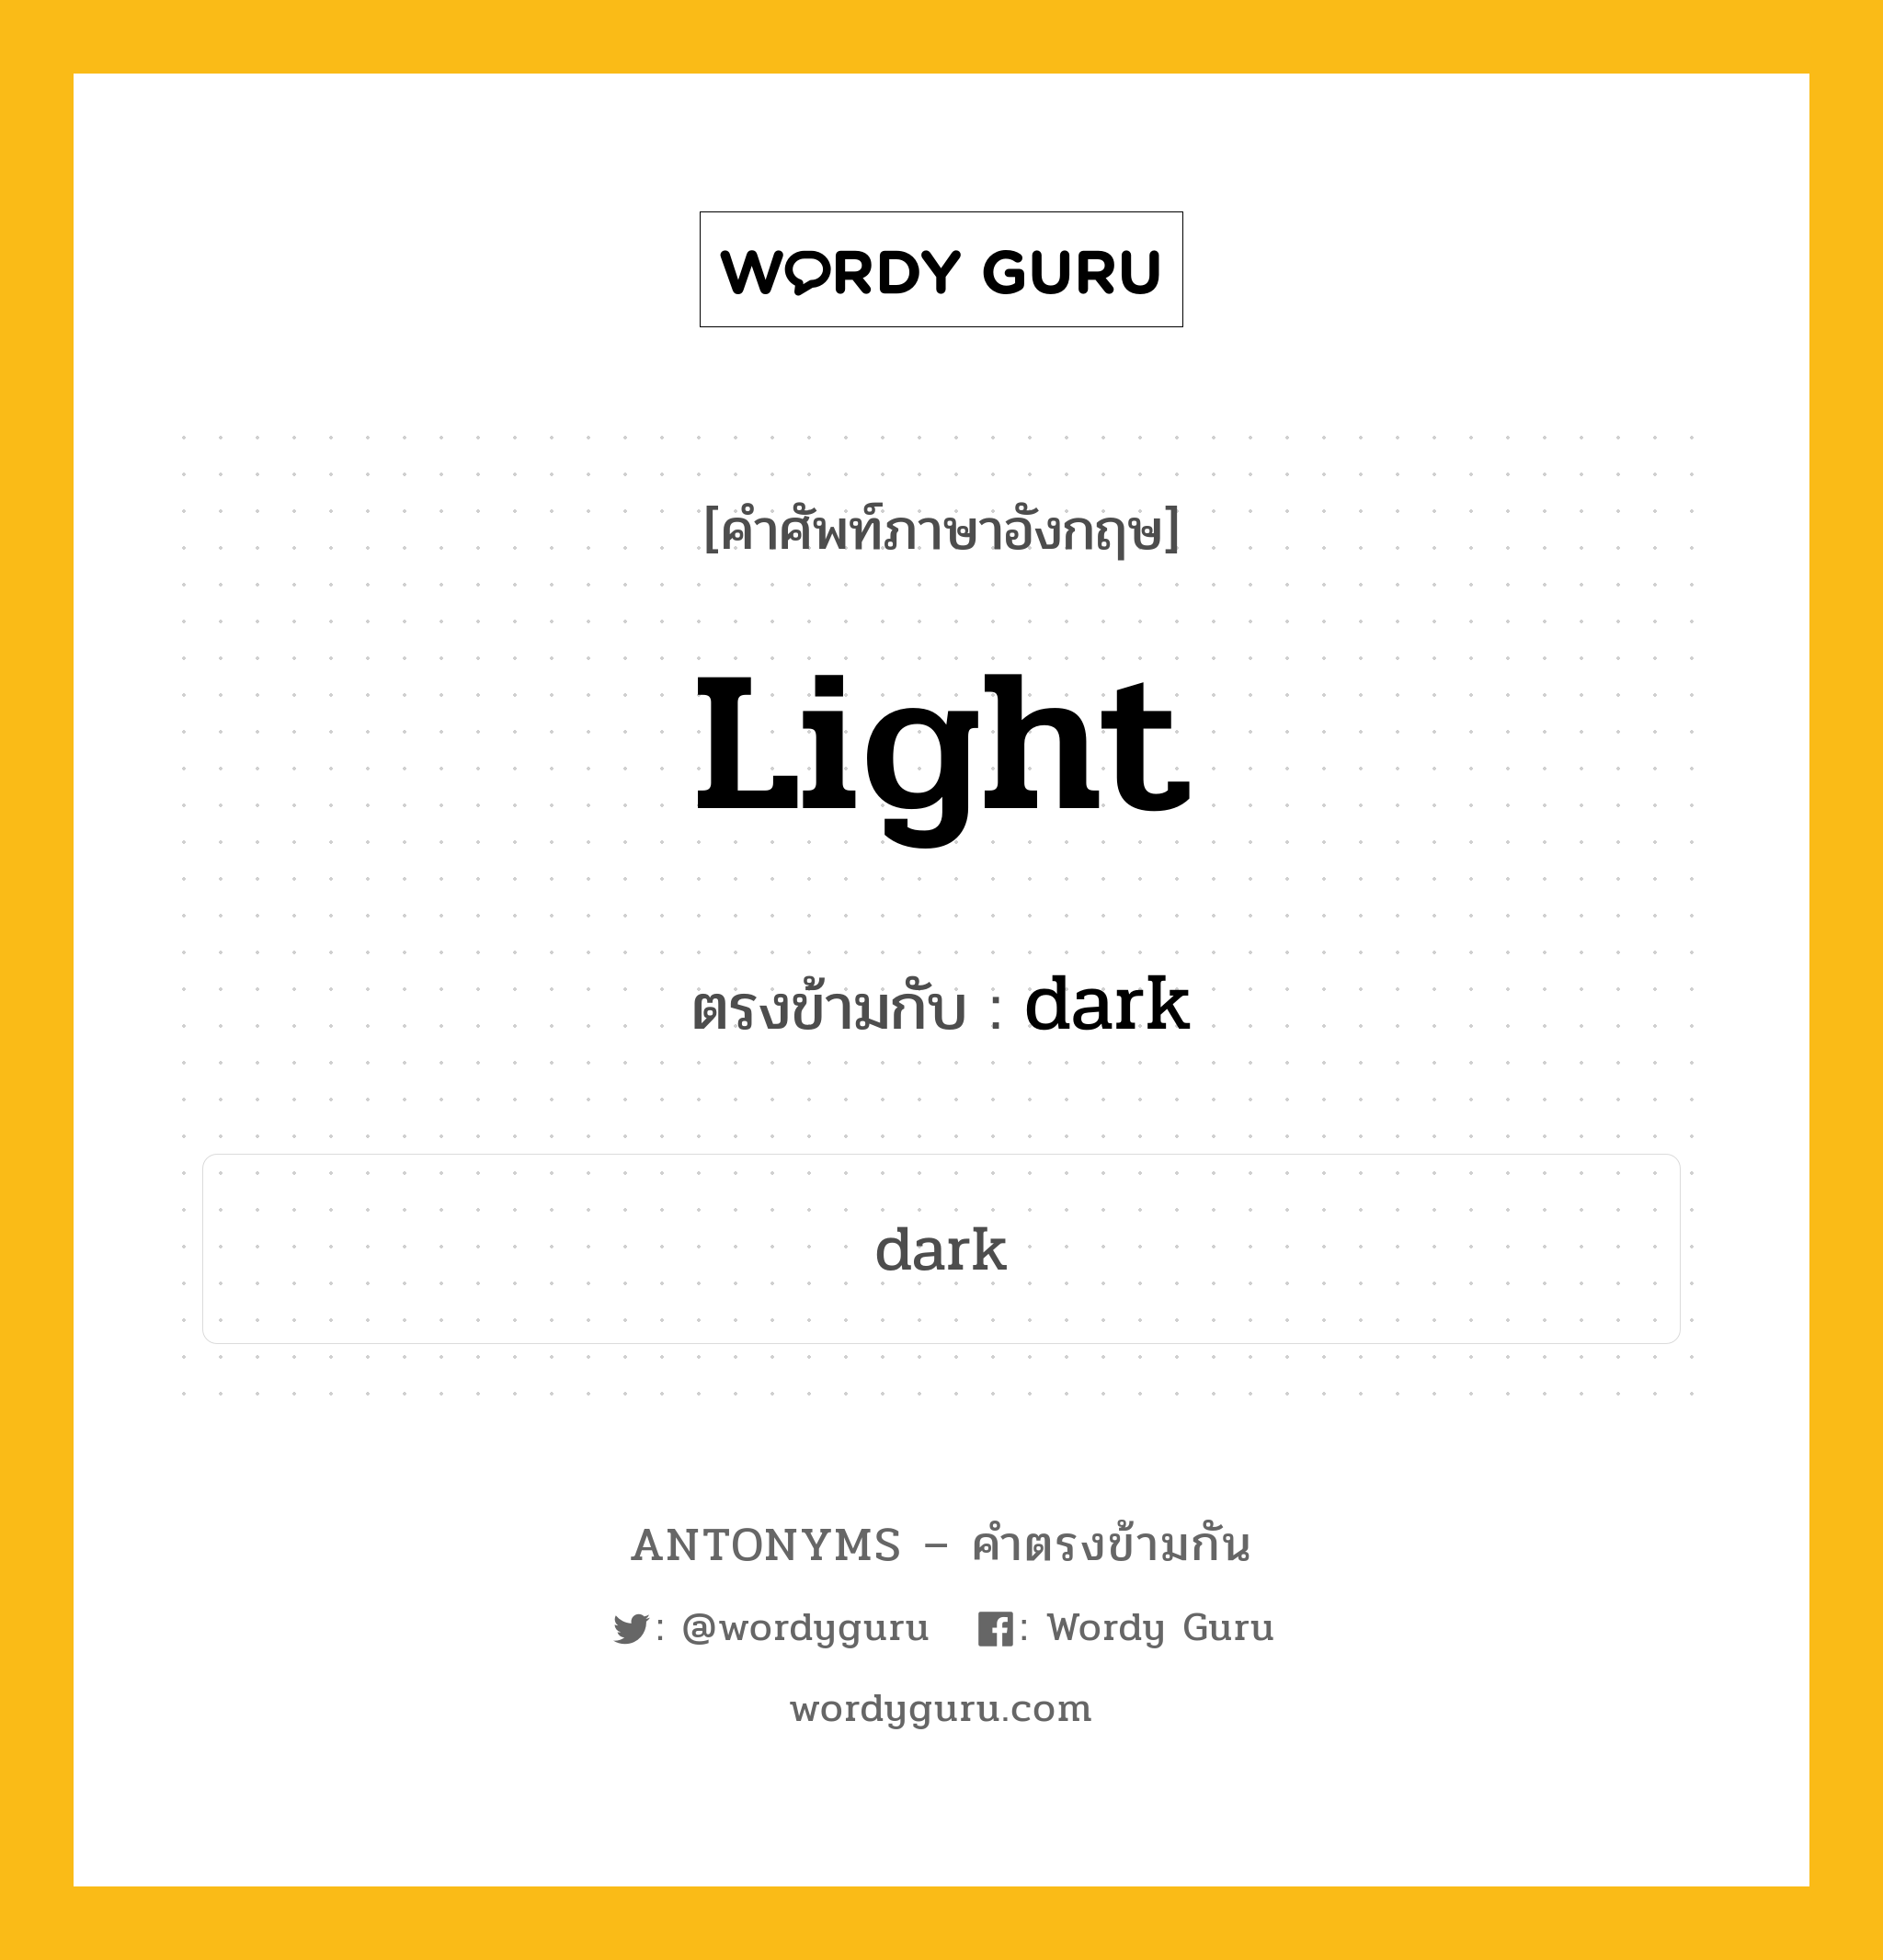 light เป็นคำตรงข้ามกับคำไหนบ้าง?, คำศัพท์ภาษาอังกฤษ light ตรงข้ามกับ dark หมวด dark